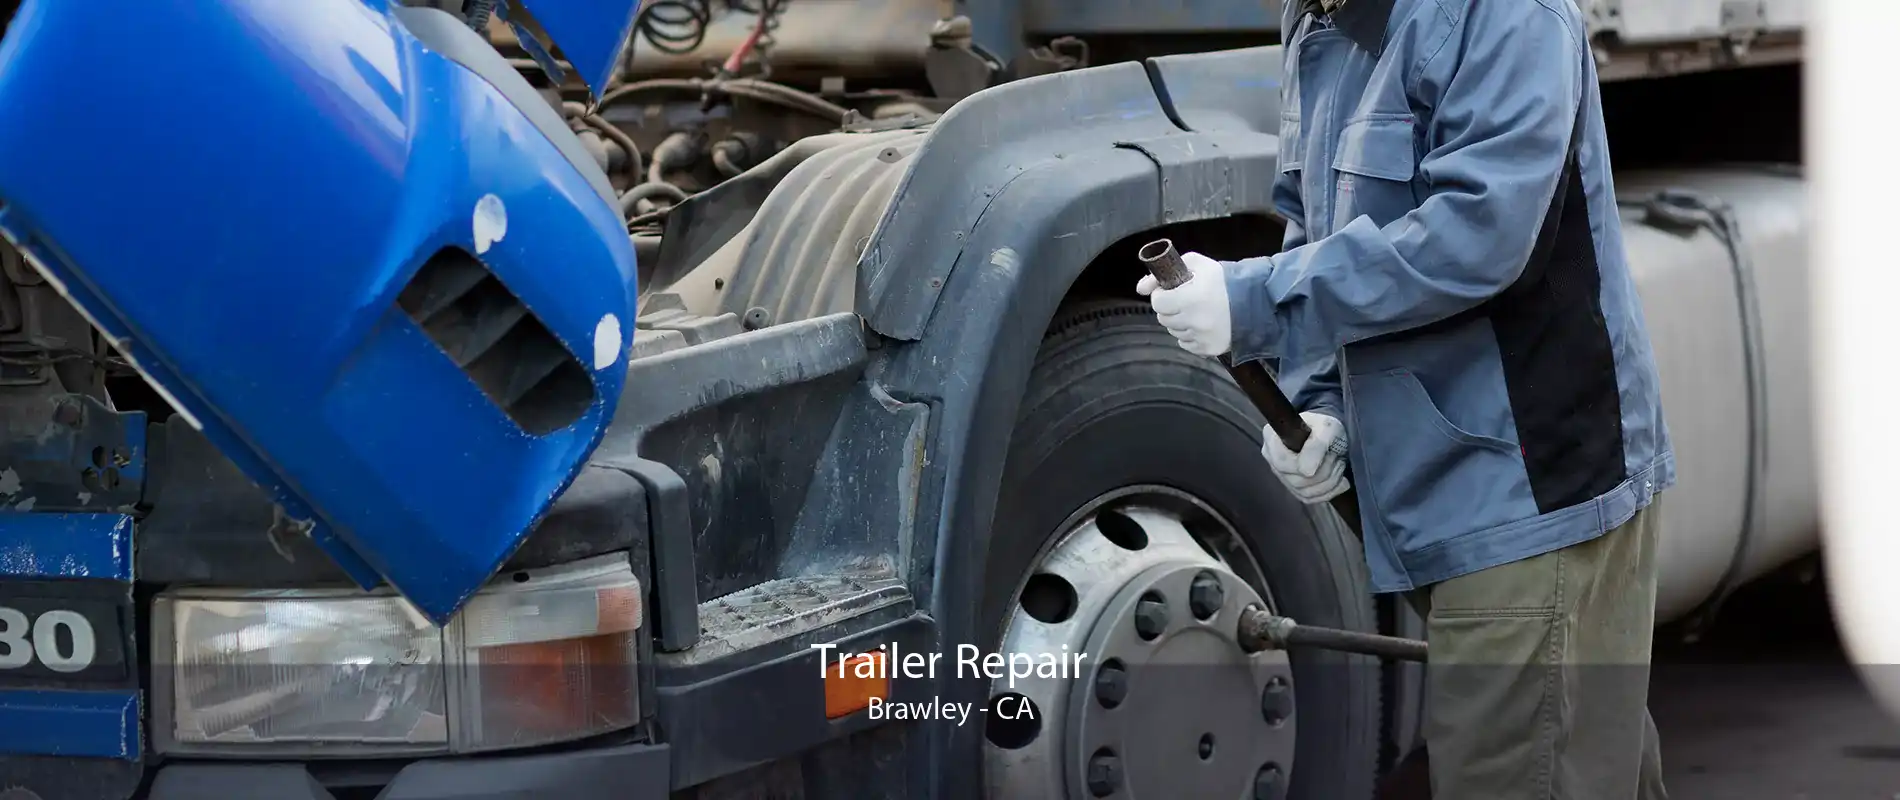 Trailer Repair Brawley - CA